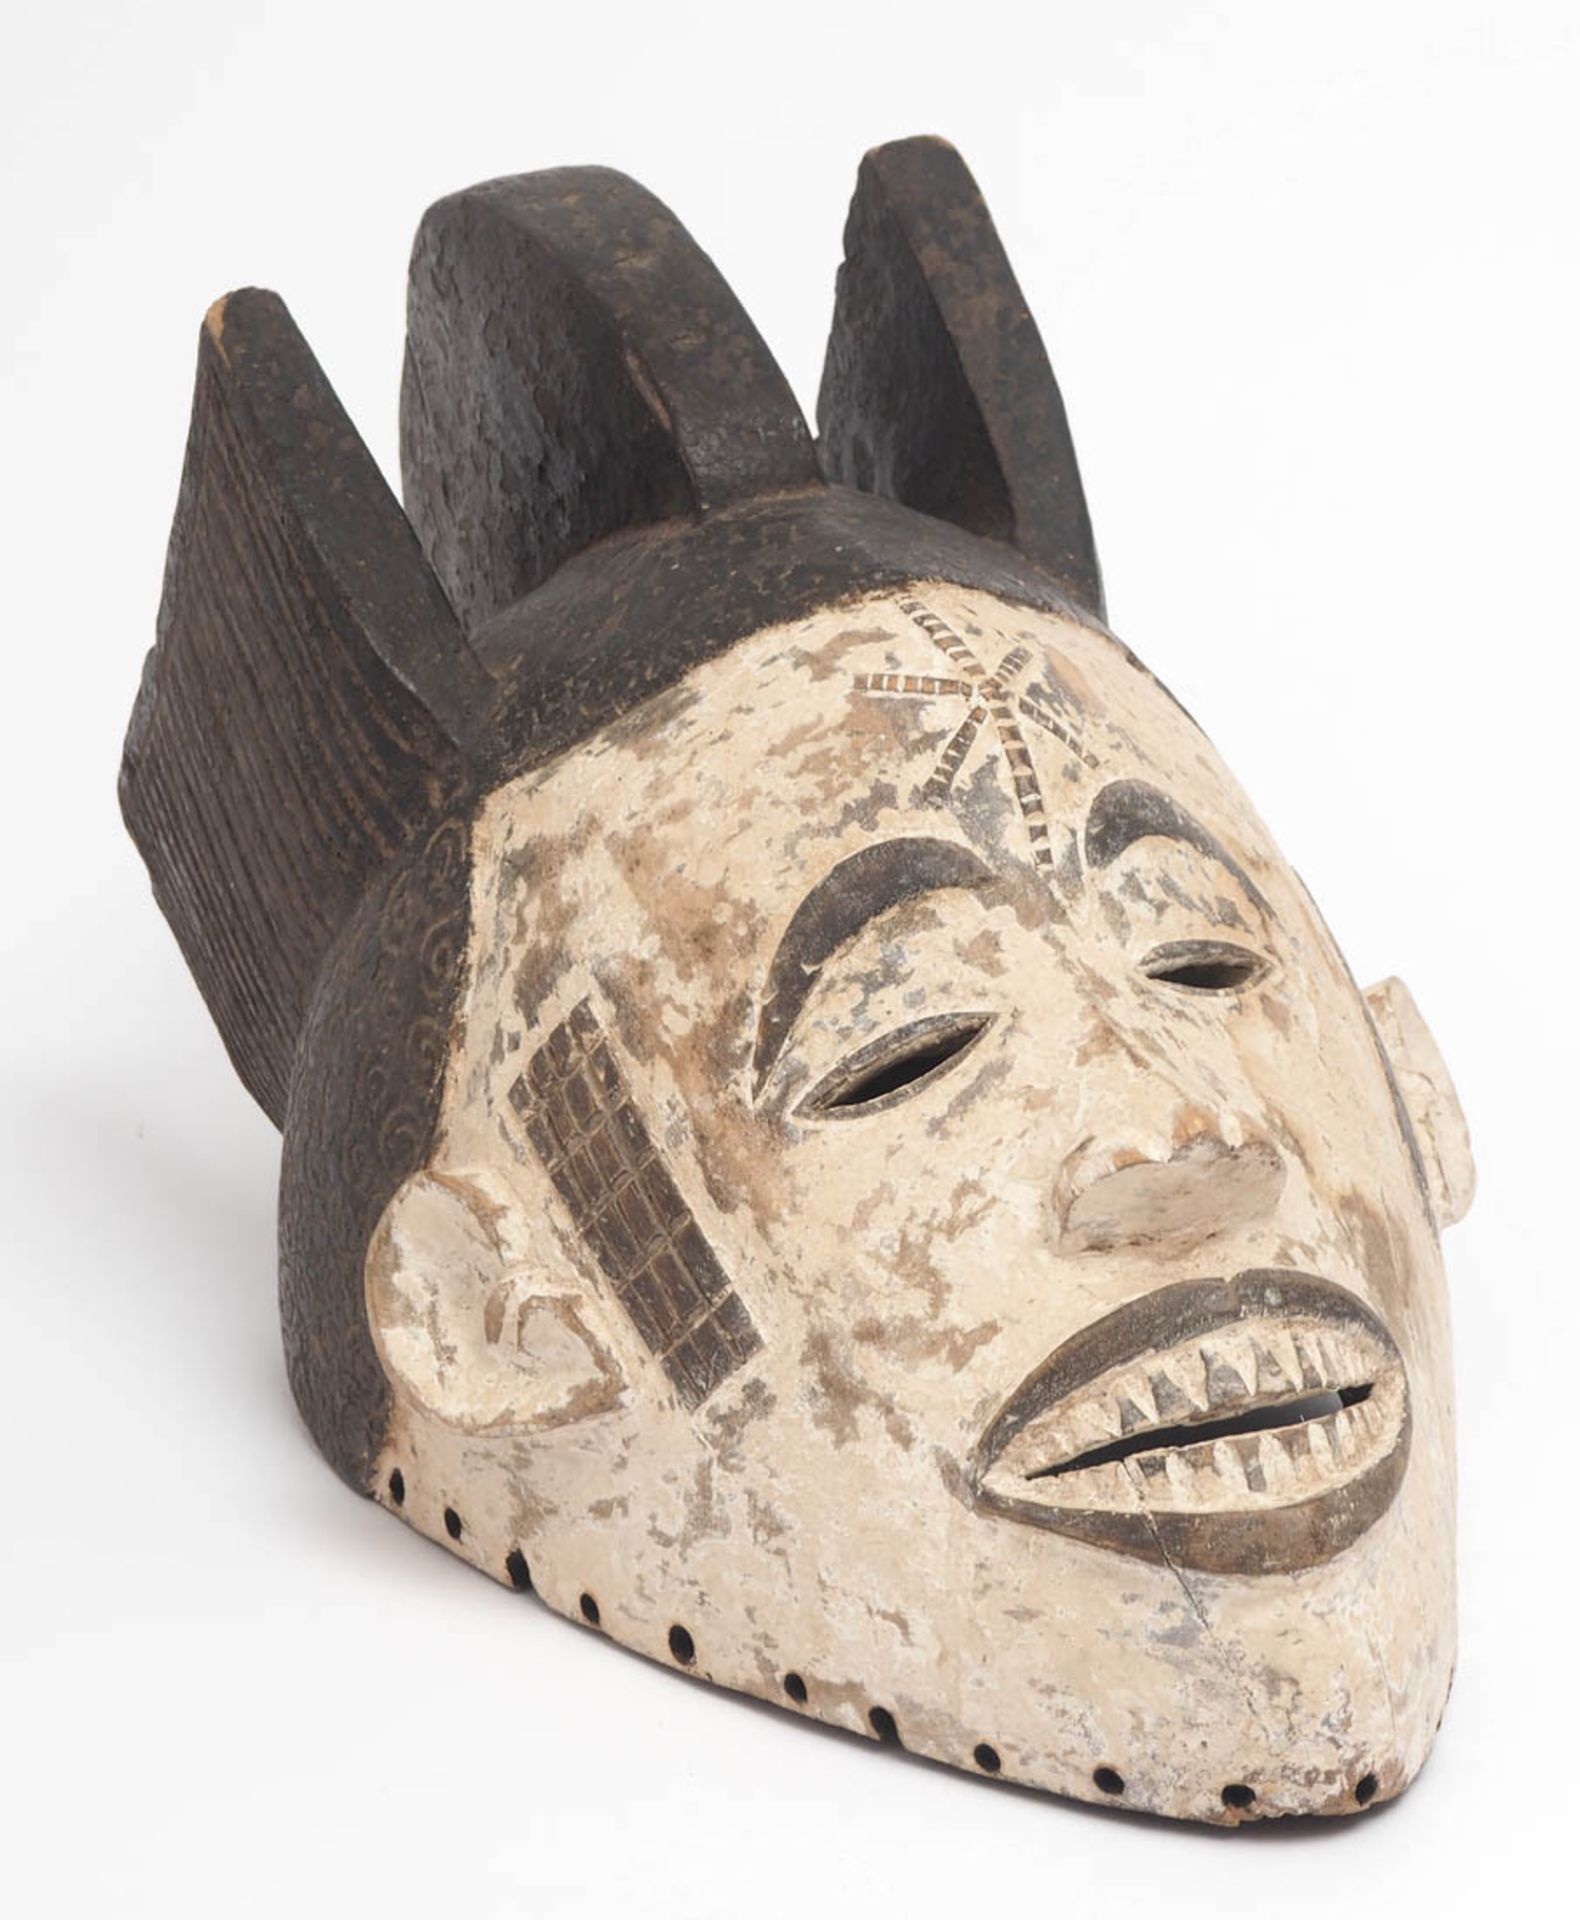 Maske des Mmwo-Geheimbundes, Ibo, Nigeria Holz, geschnitzt, partiell geschwärzt bzw. weiß gekalkt.